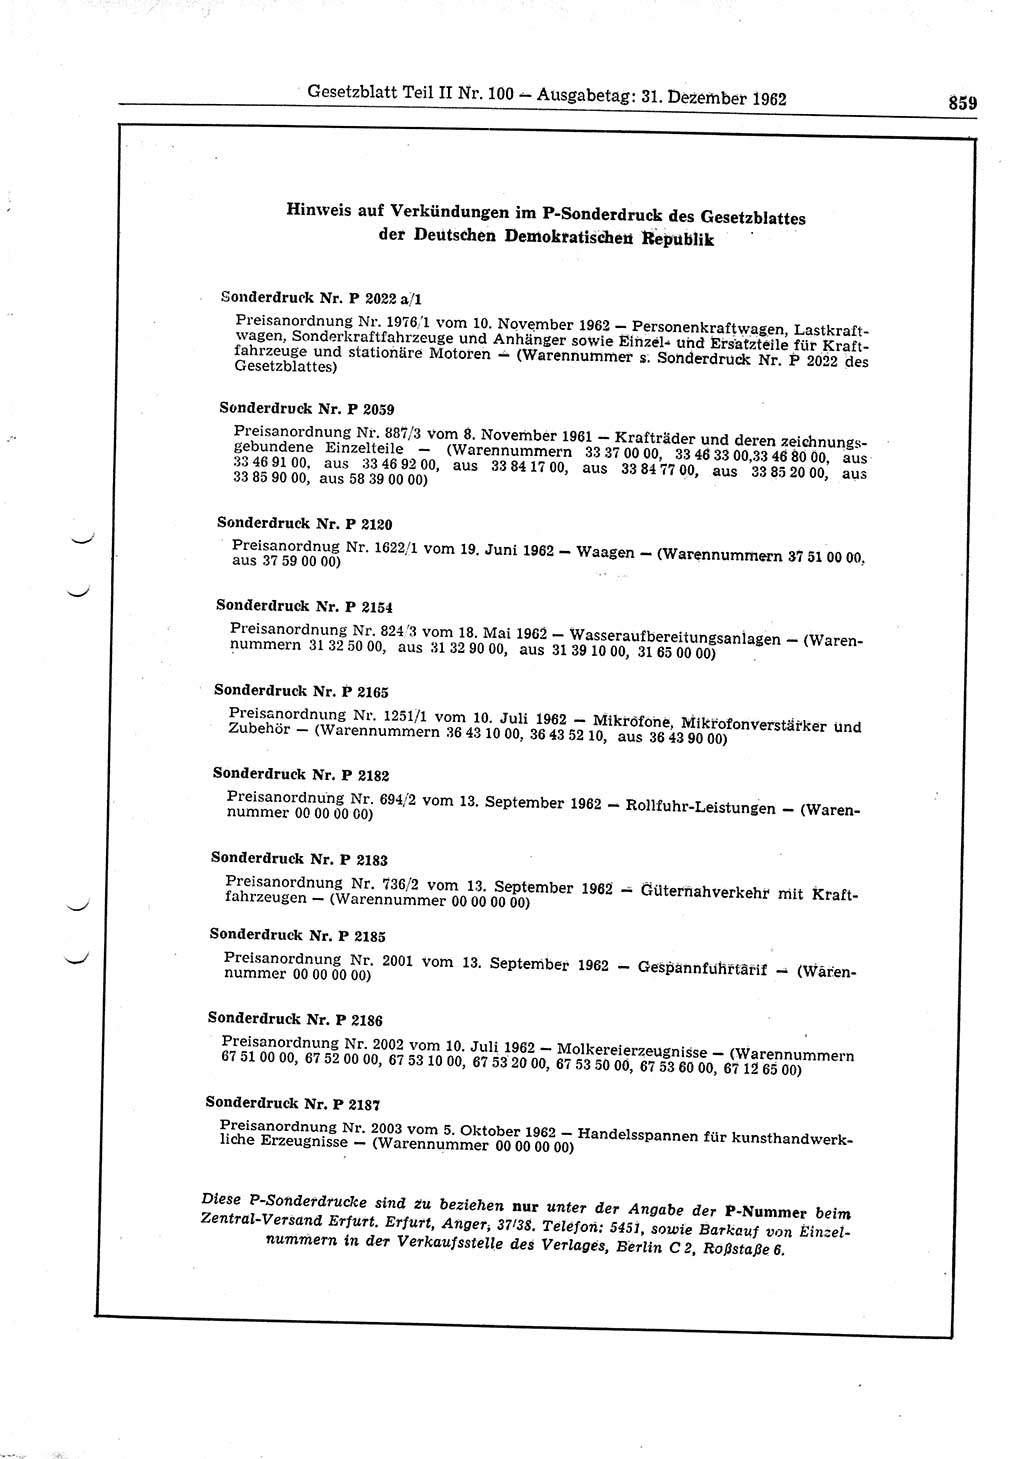 Gesetzblatt (GBl.) der Deutschen Demokratischen Republik (DDR) Teil ⅠⅠ 1962, Seite 859 (GBl. DDR ⅠⅠ 1962, S. 859)